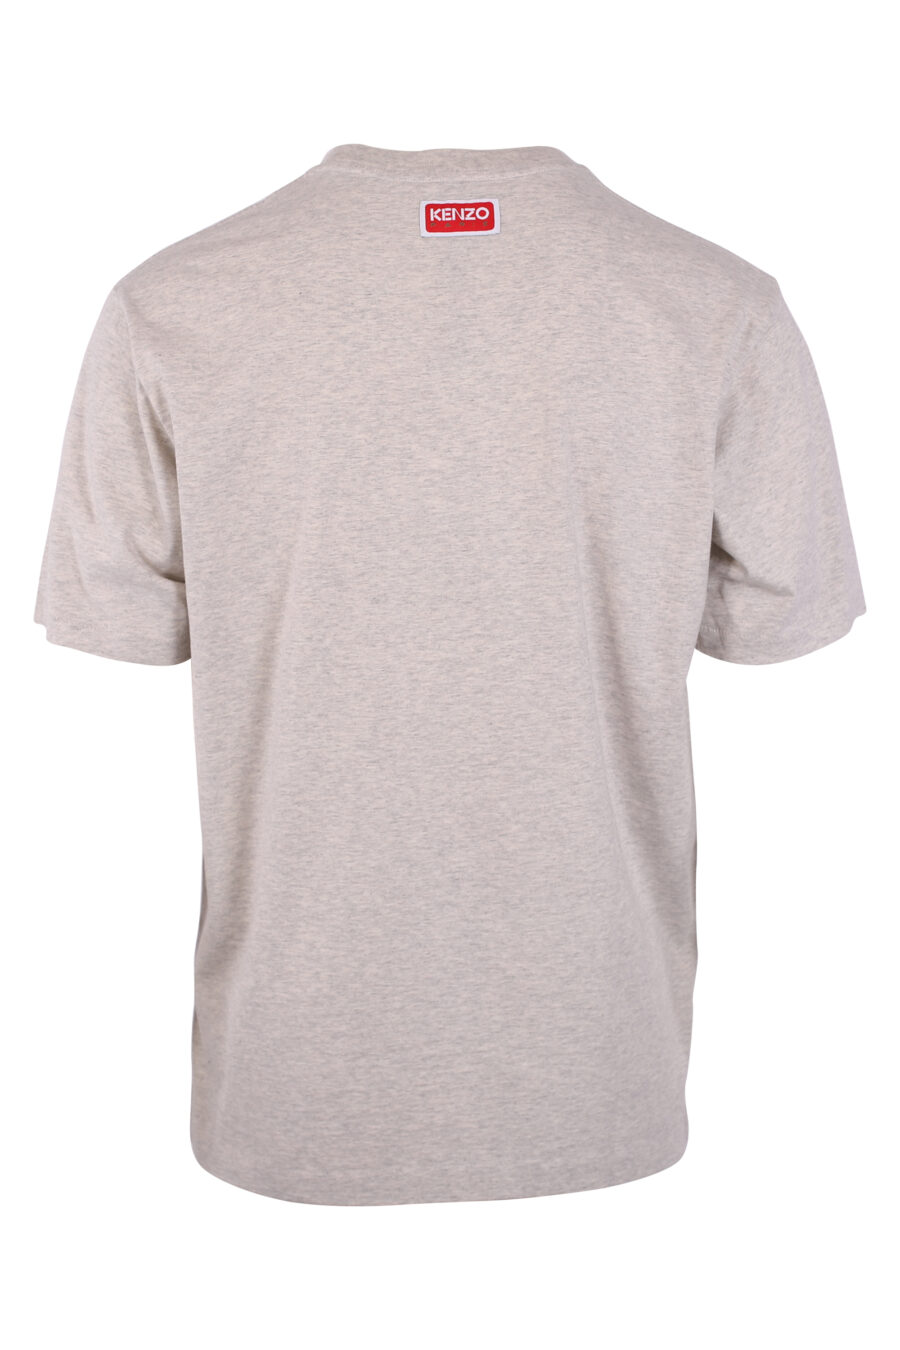 T-Shirt grau mit "Blumen"-Logo - IMG 9466